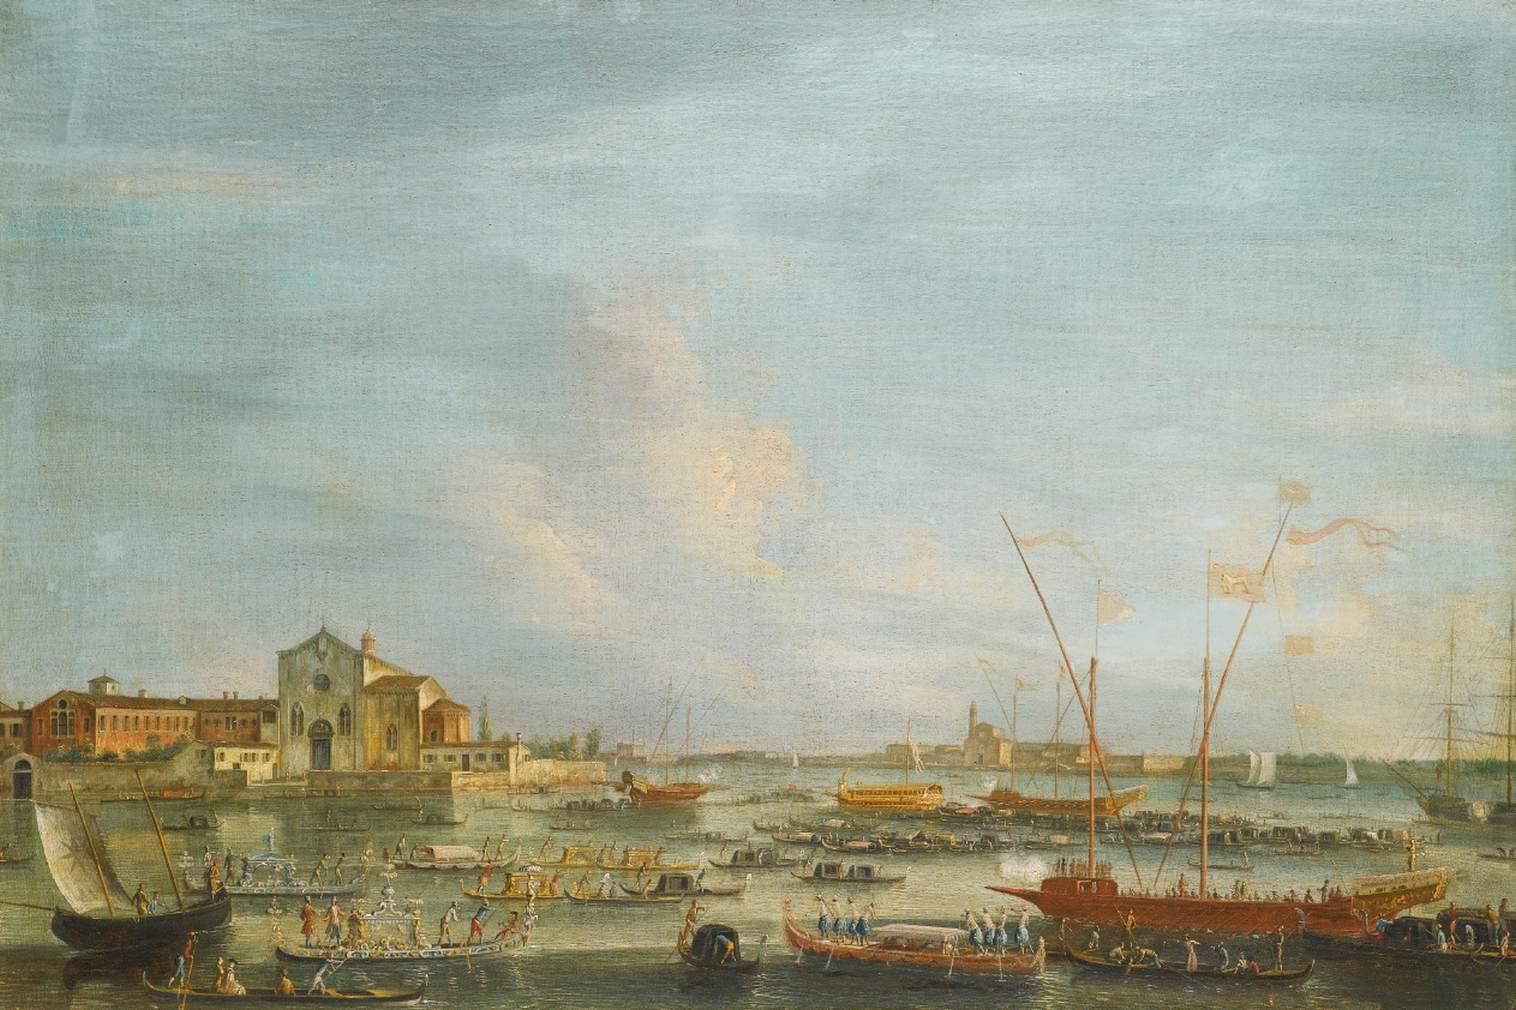 נוף לסנט'לנה וסן ניקולו די לידו ביום ההתעלות, ונציה